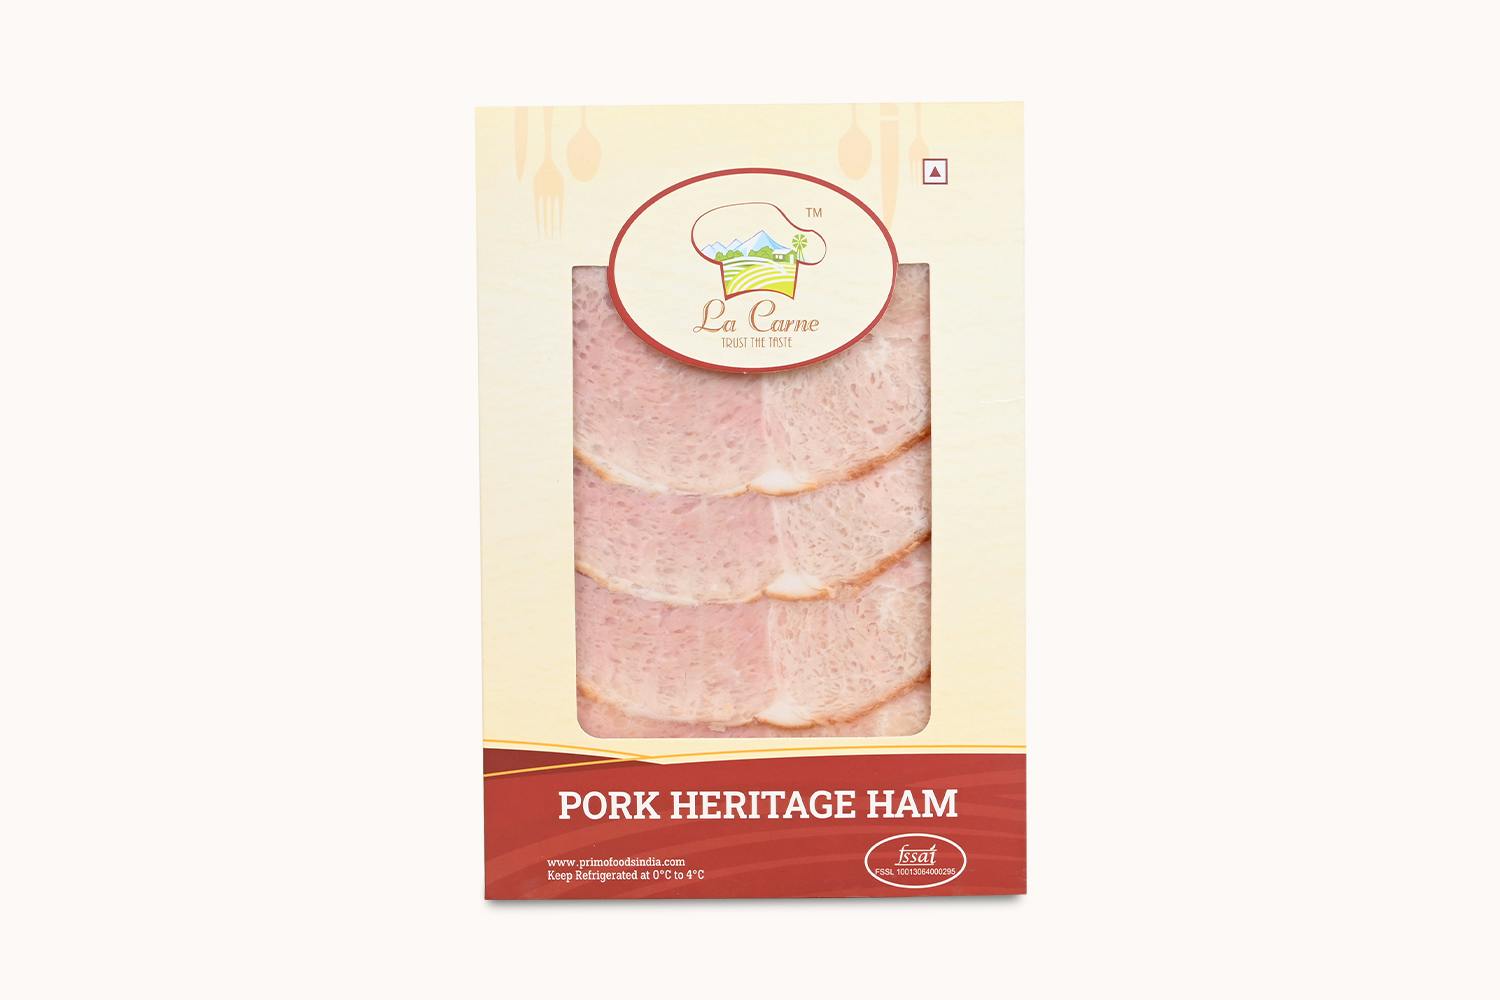 La Carne Pork Heritage Ham